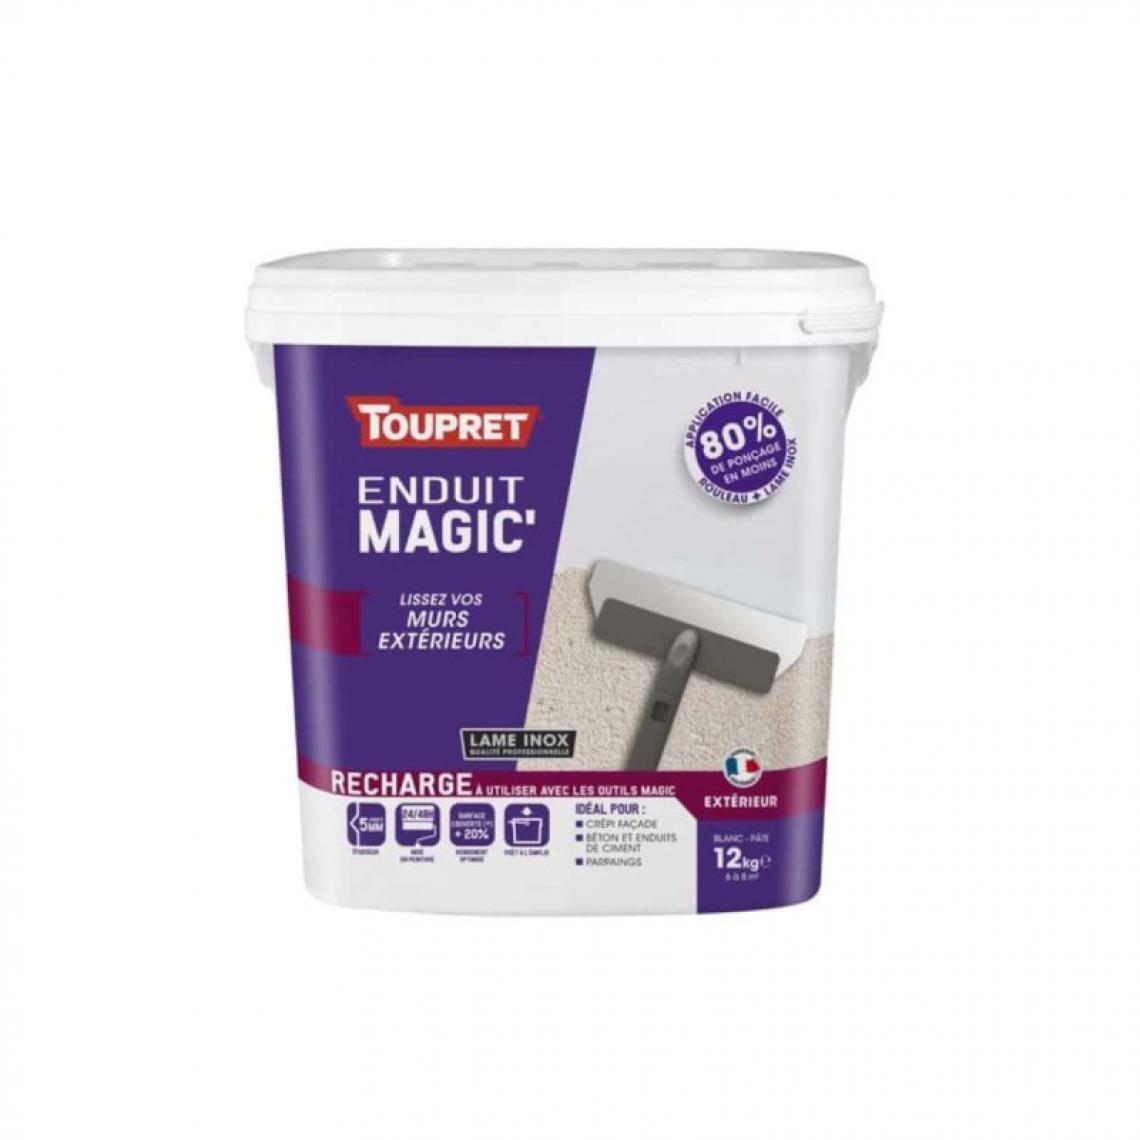 Toupret - Recharge Enduit Magic Mur TOUPRET Pate Allégée 12Kg - MAGG12 - Mastic, silicone, joint